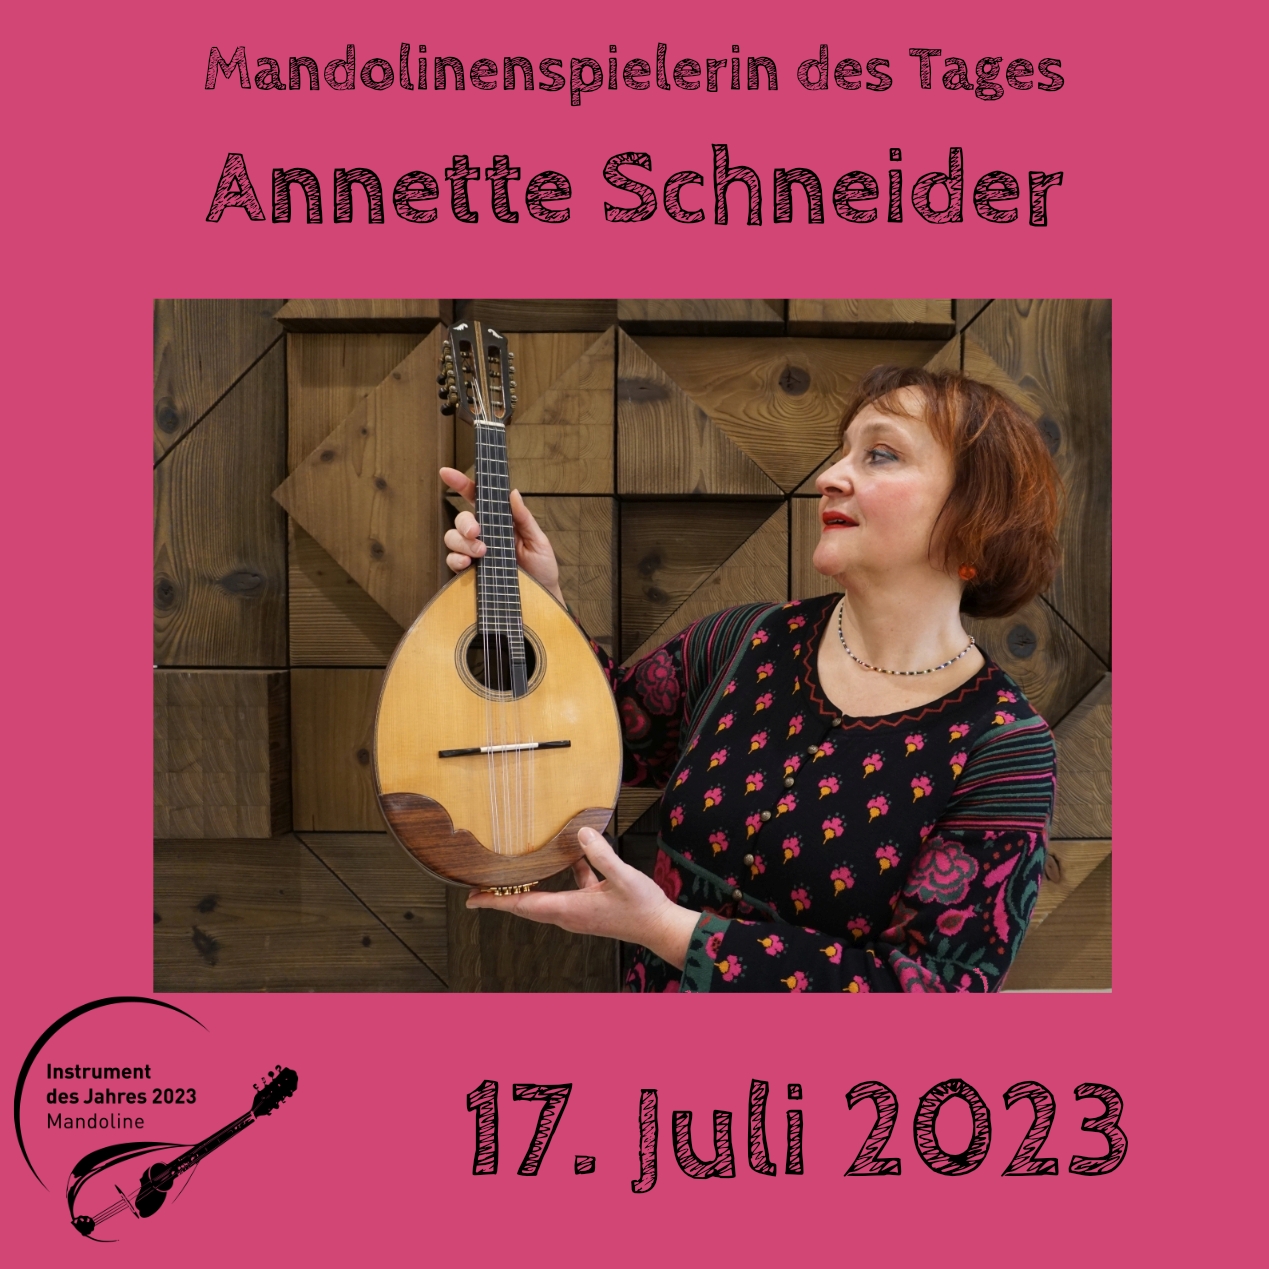 17. Juli - Annette Schneider  Mandoline Instrument des Jahres 2023 Mandolinenspieler Mandolinenspielerin des Tages